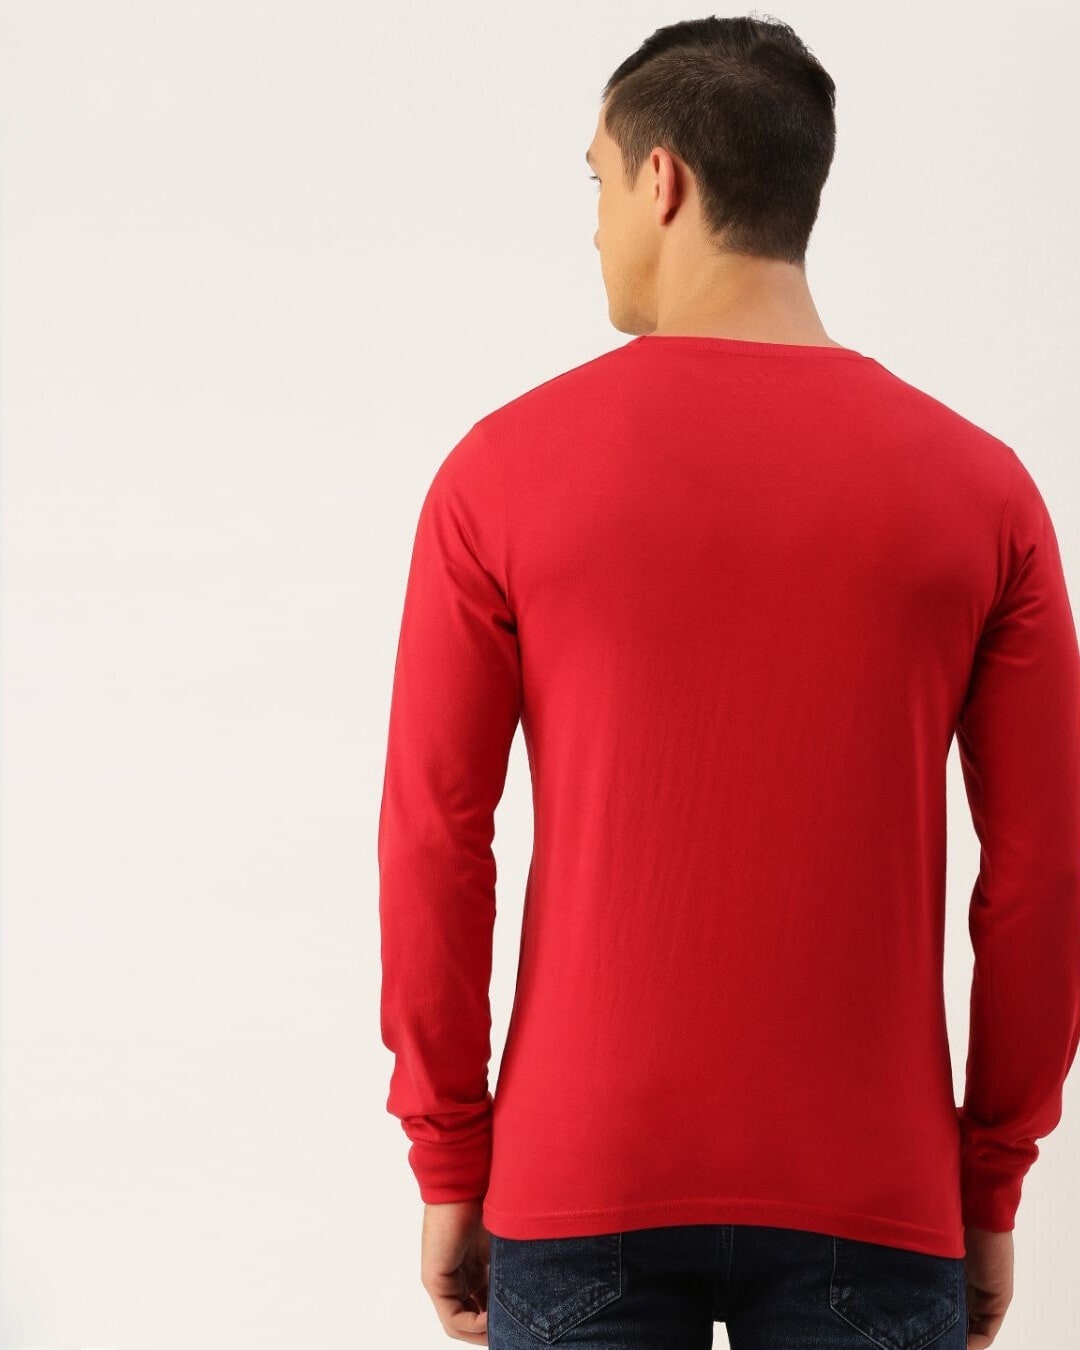 Shop Men's Red Striped T-shirt-Back